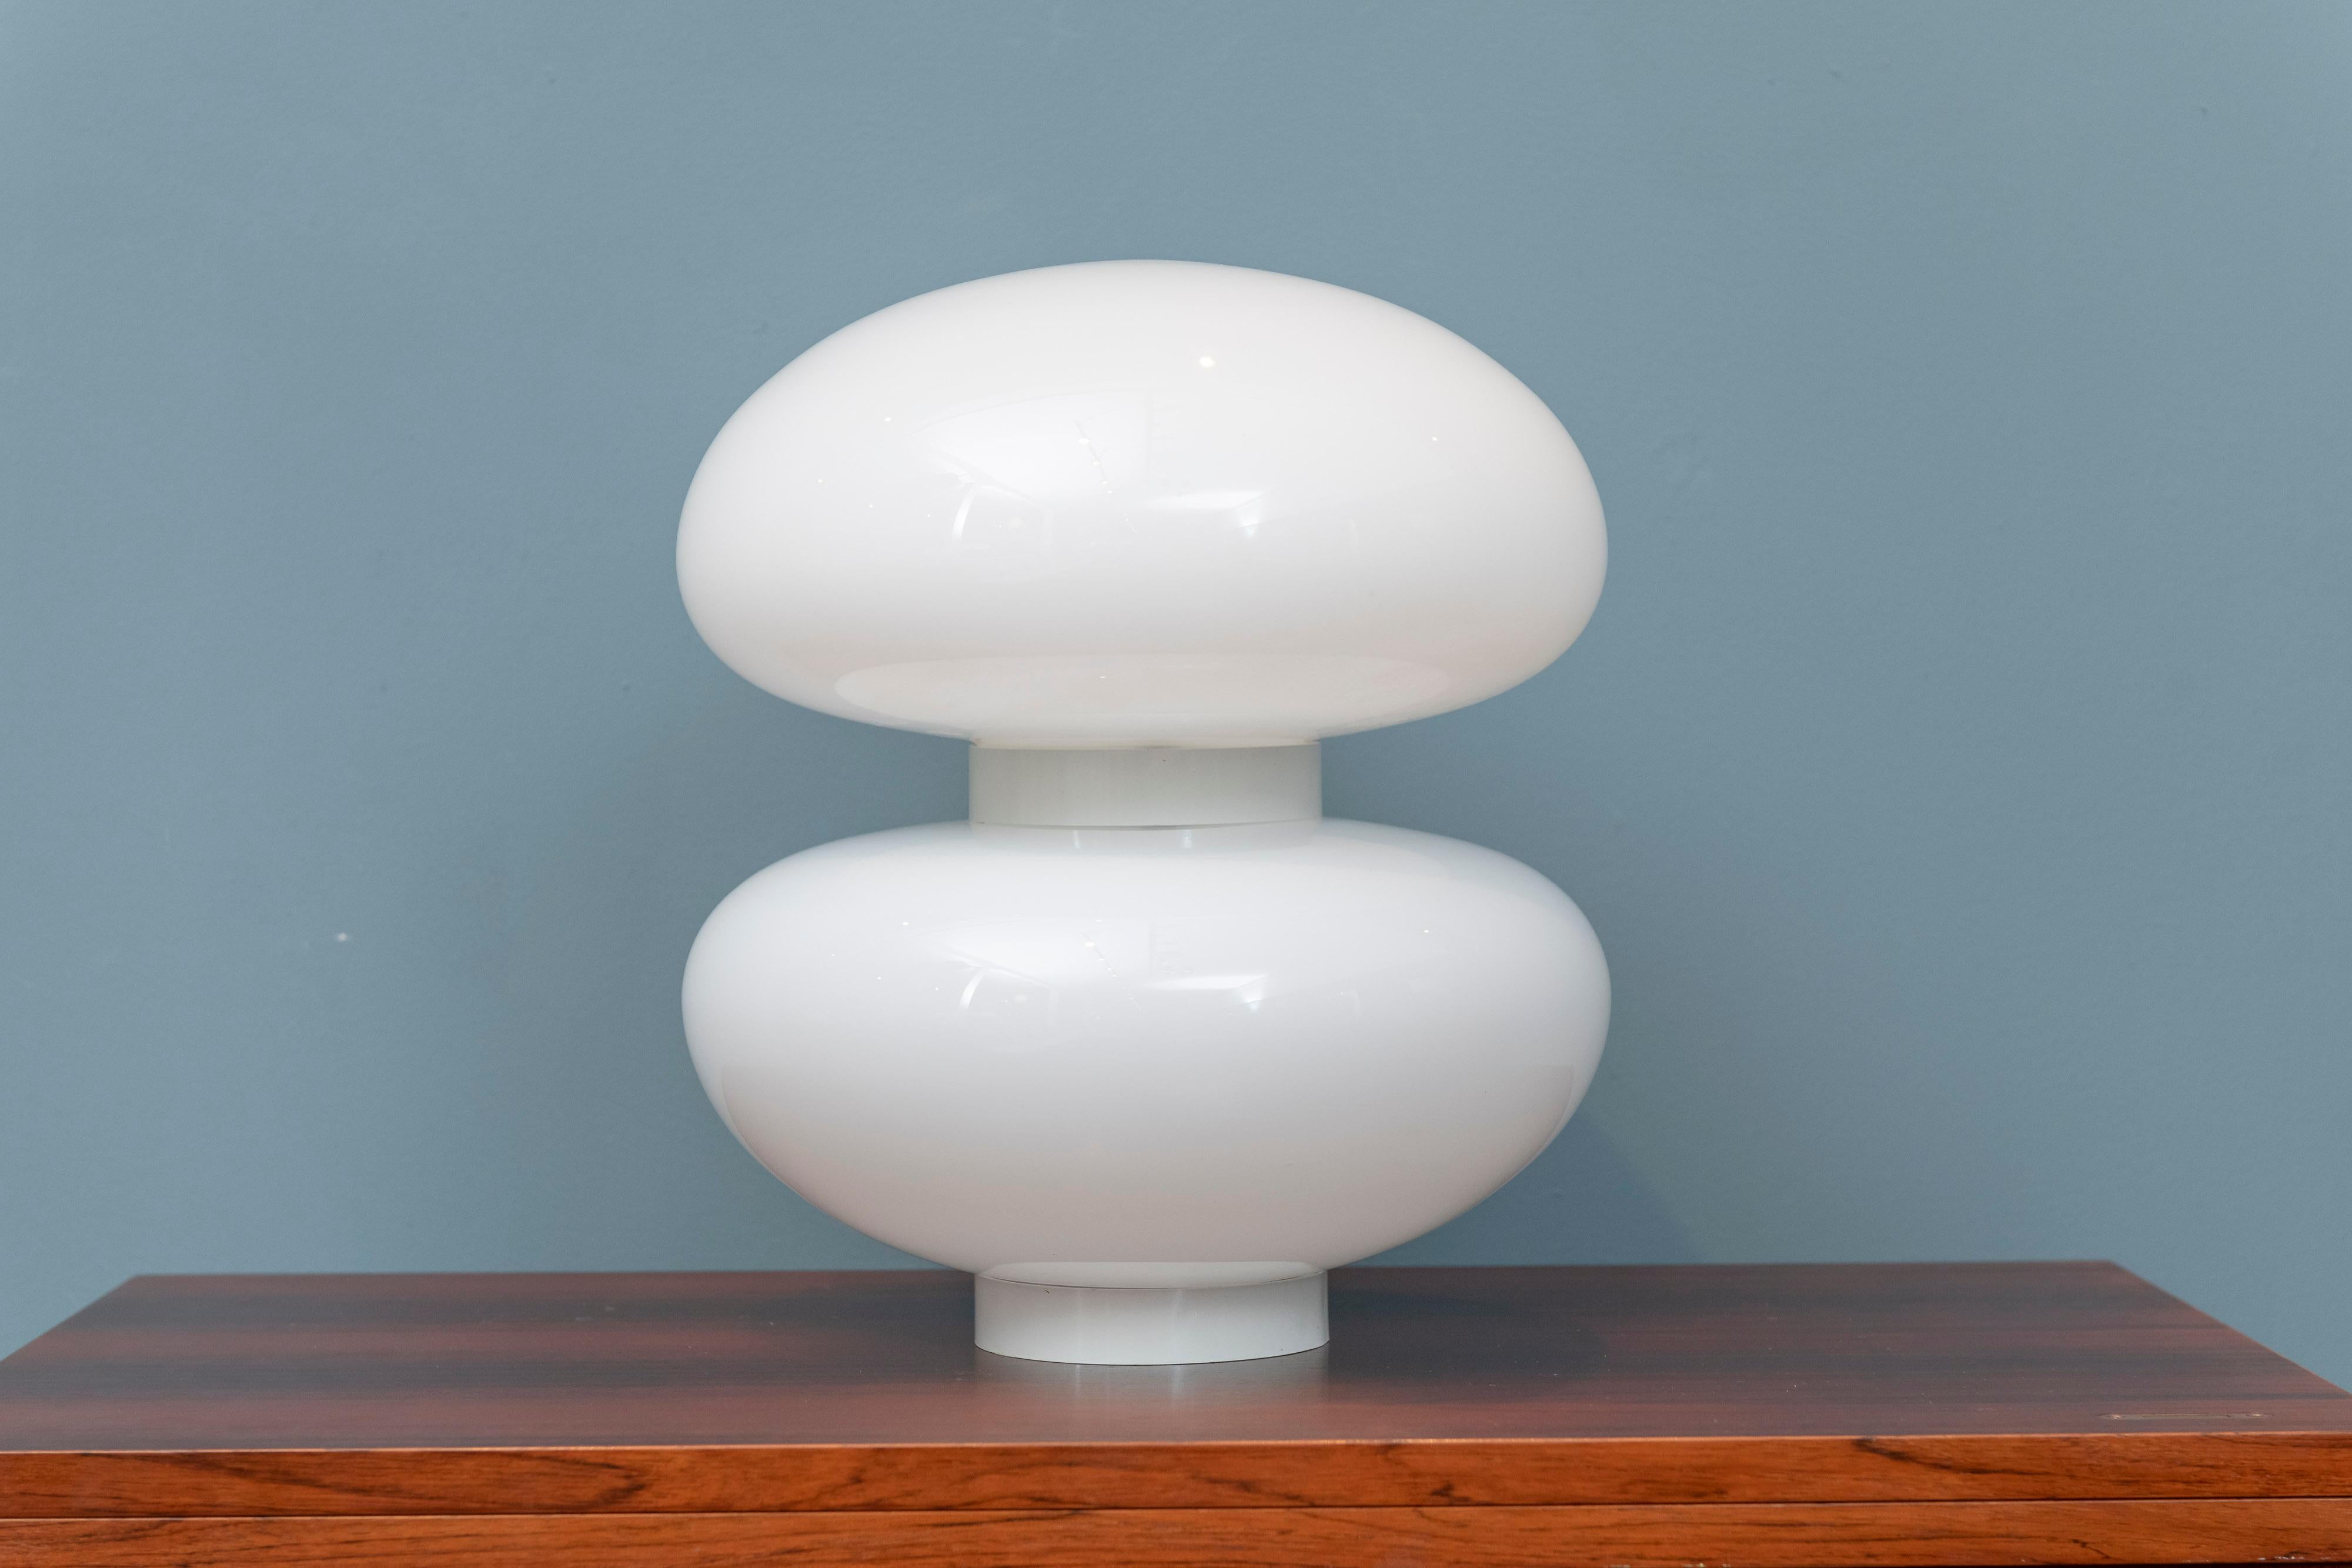 Bill Curry Design Line Tischleuchte, bestehend aus zwei Glaskugeln, die von zwei kreisförmigen Ringen getragen werden, von denen einer als Sockel dient und der andere die doppelte Porzellanfassung mit zwei Fassungen hält, beschriftet.

William